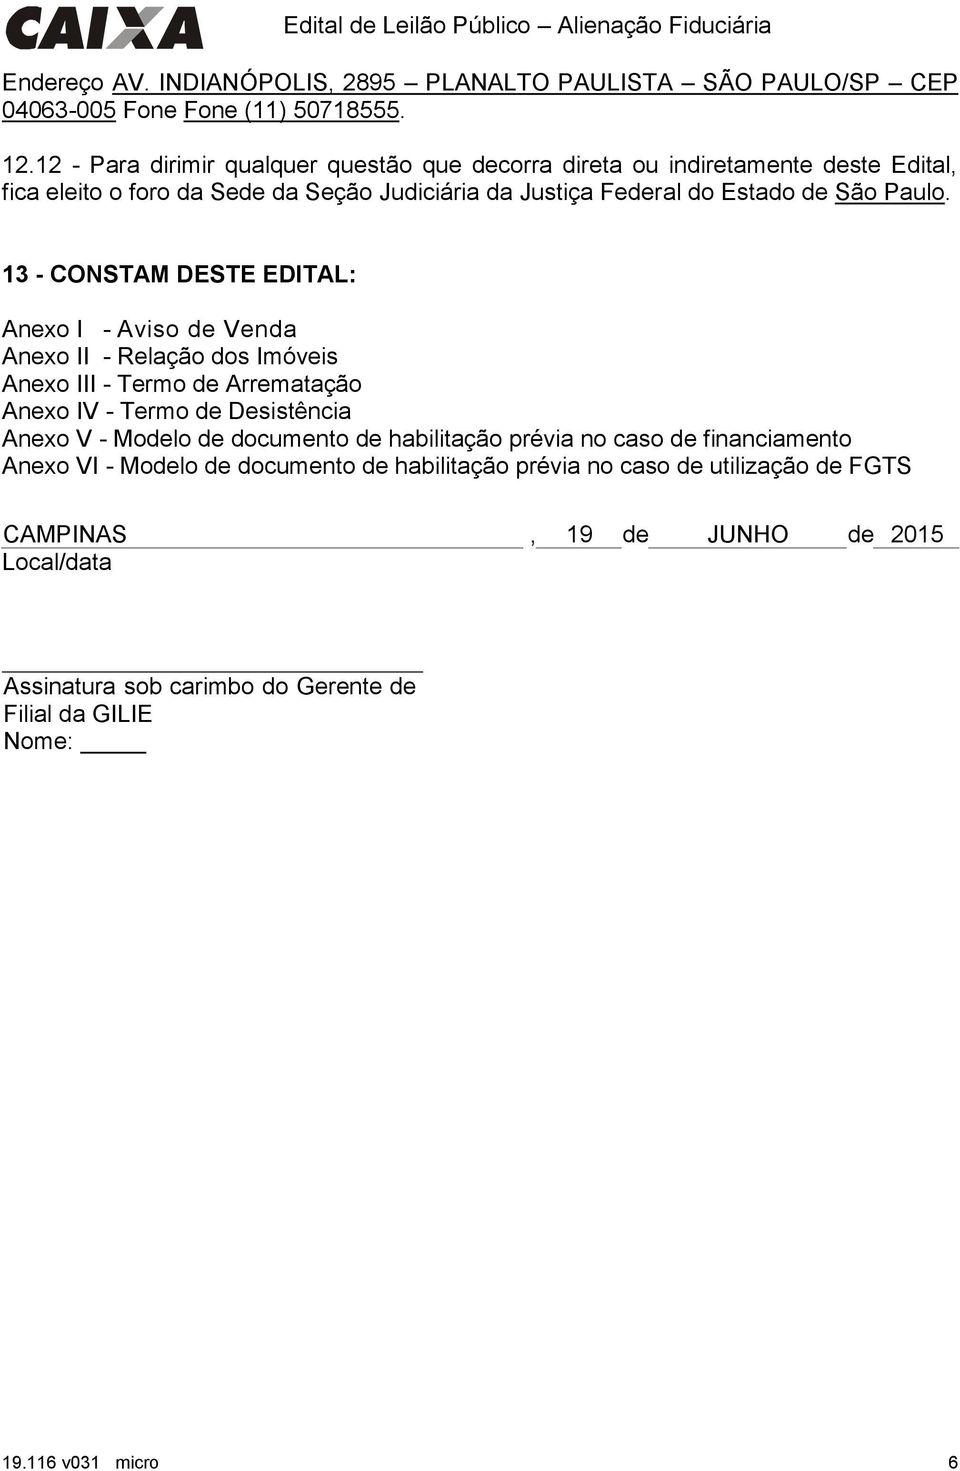 13 - CONSTAM DESTE EDITAL: Anexo I - Aviso de Anexo II - Relação dos Imóveis Anexo III - Termo de Arrematação Anexo IV - Termo de Desistência Anexo V - Modelo de documento